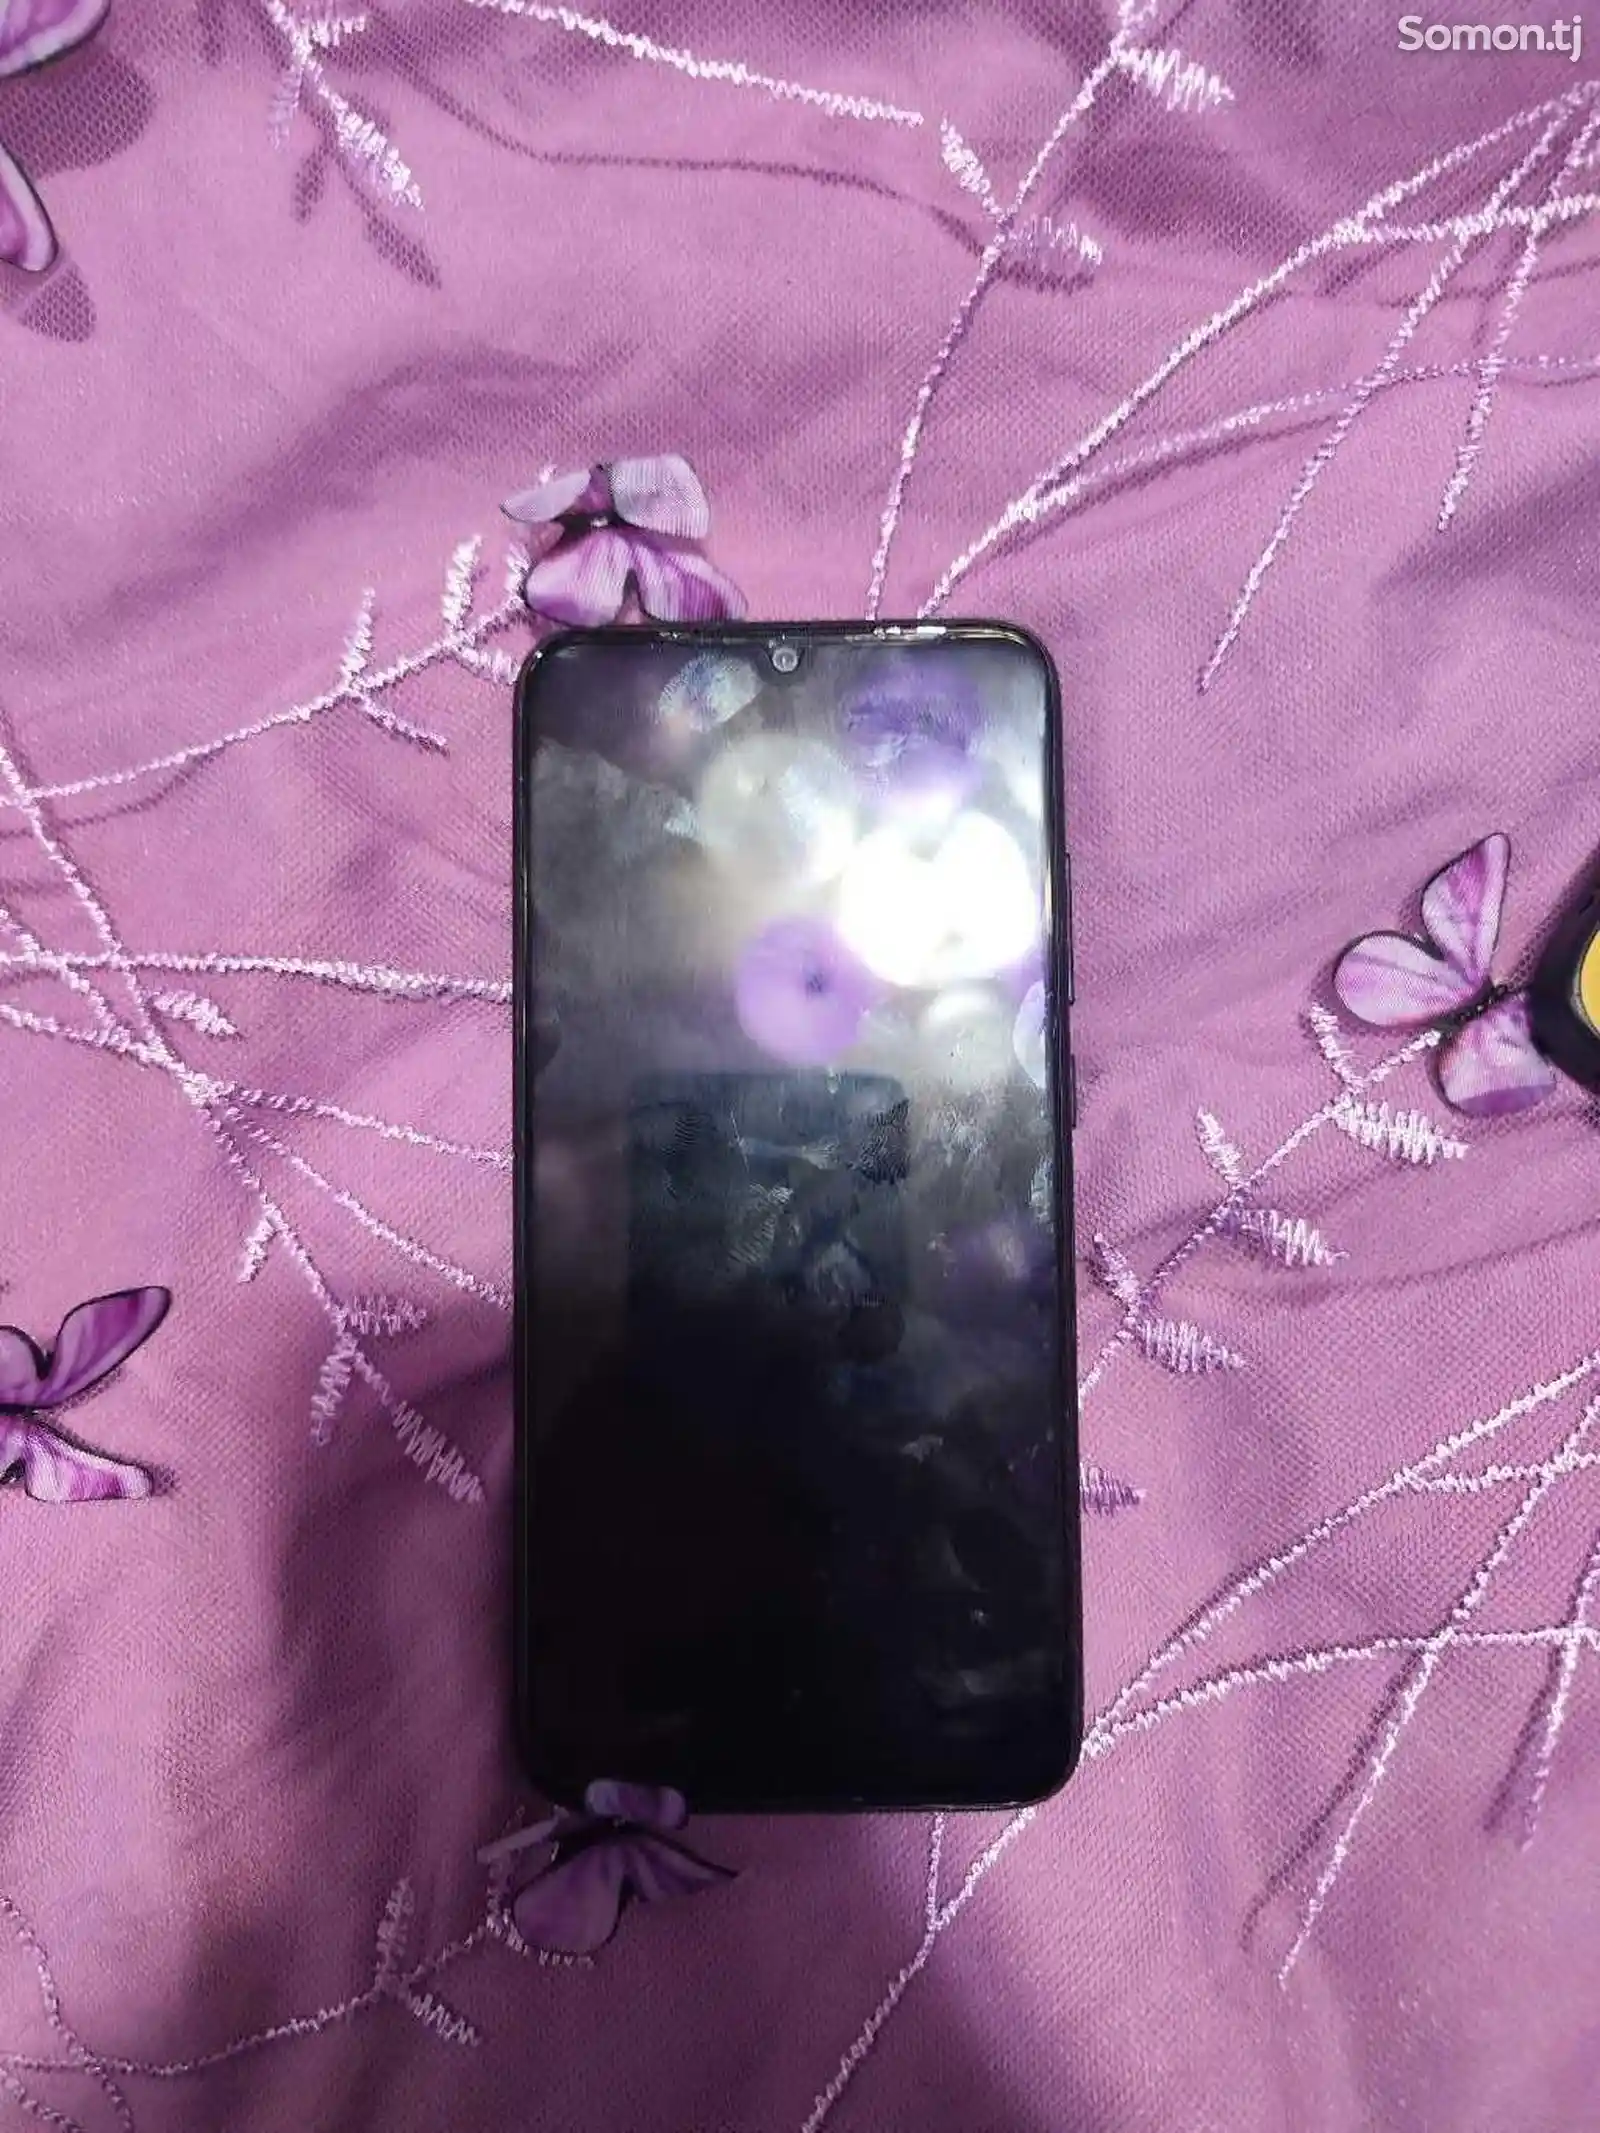 Xiaomi Redmi Note 7-1